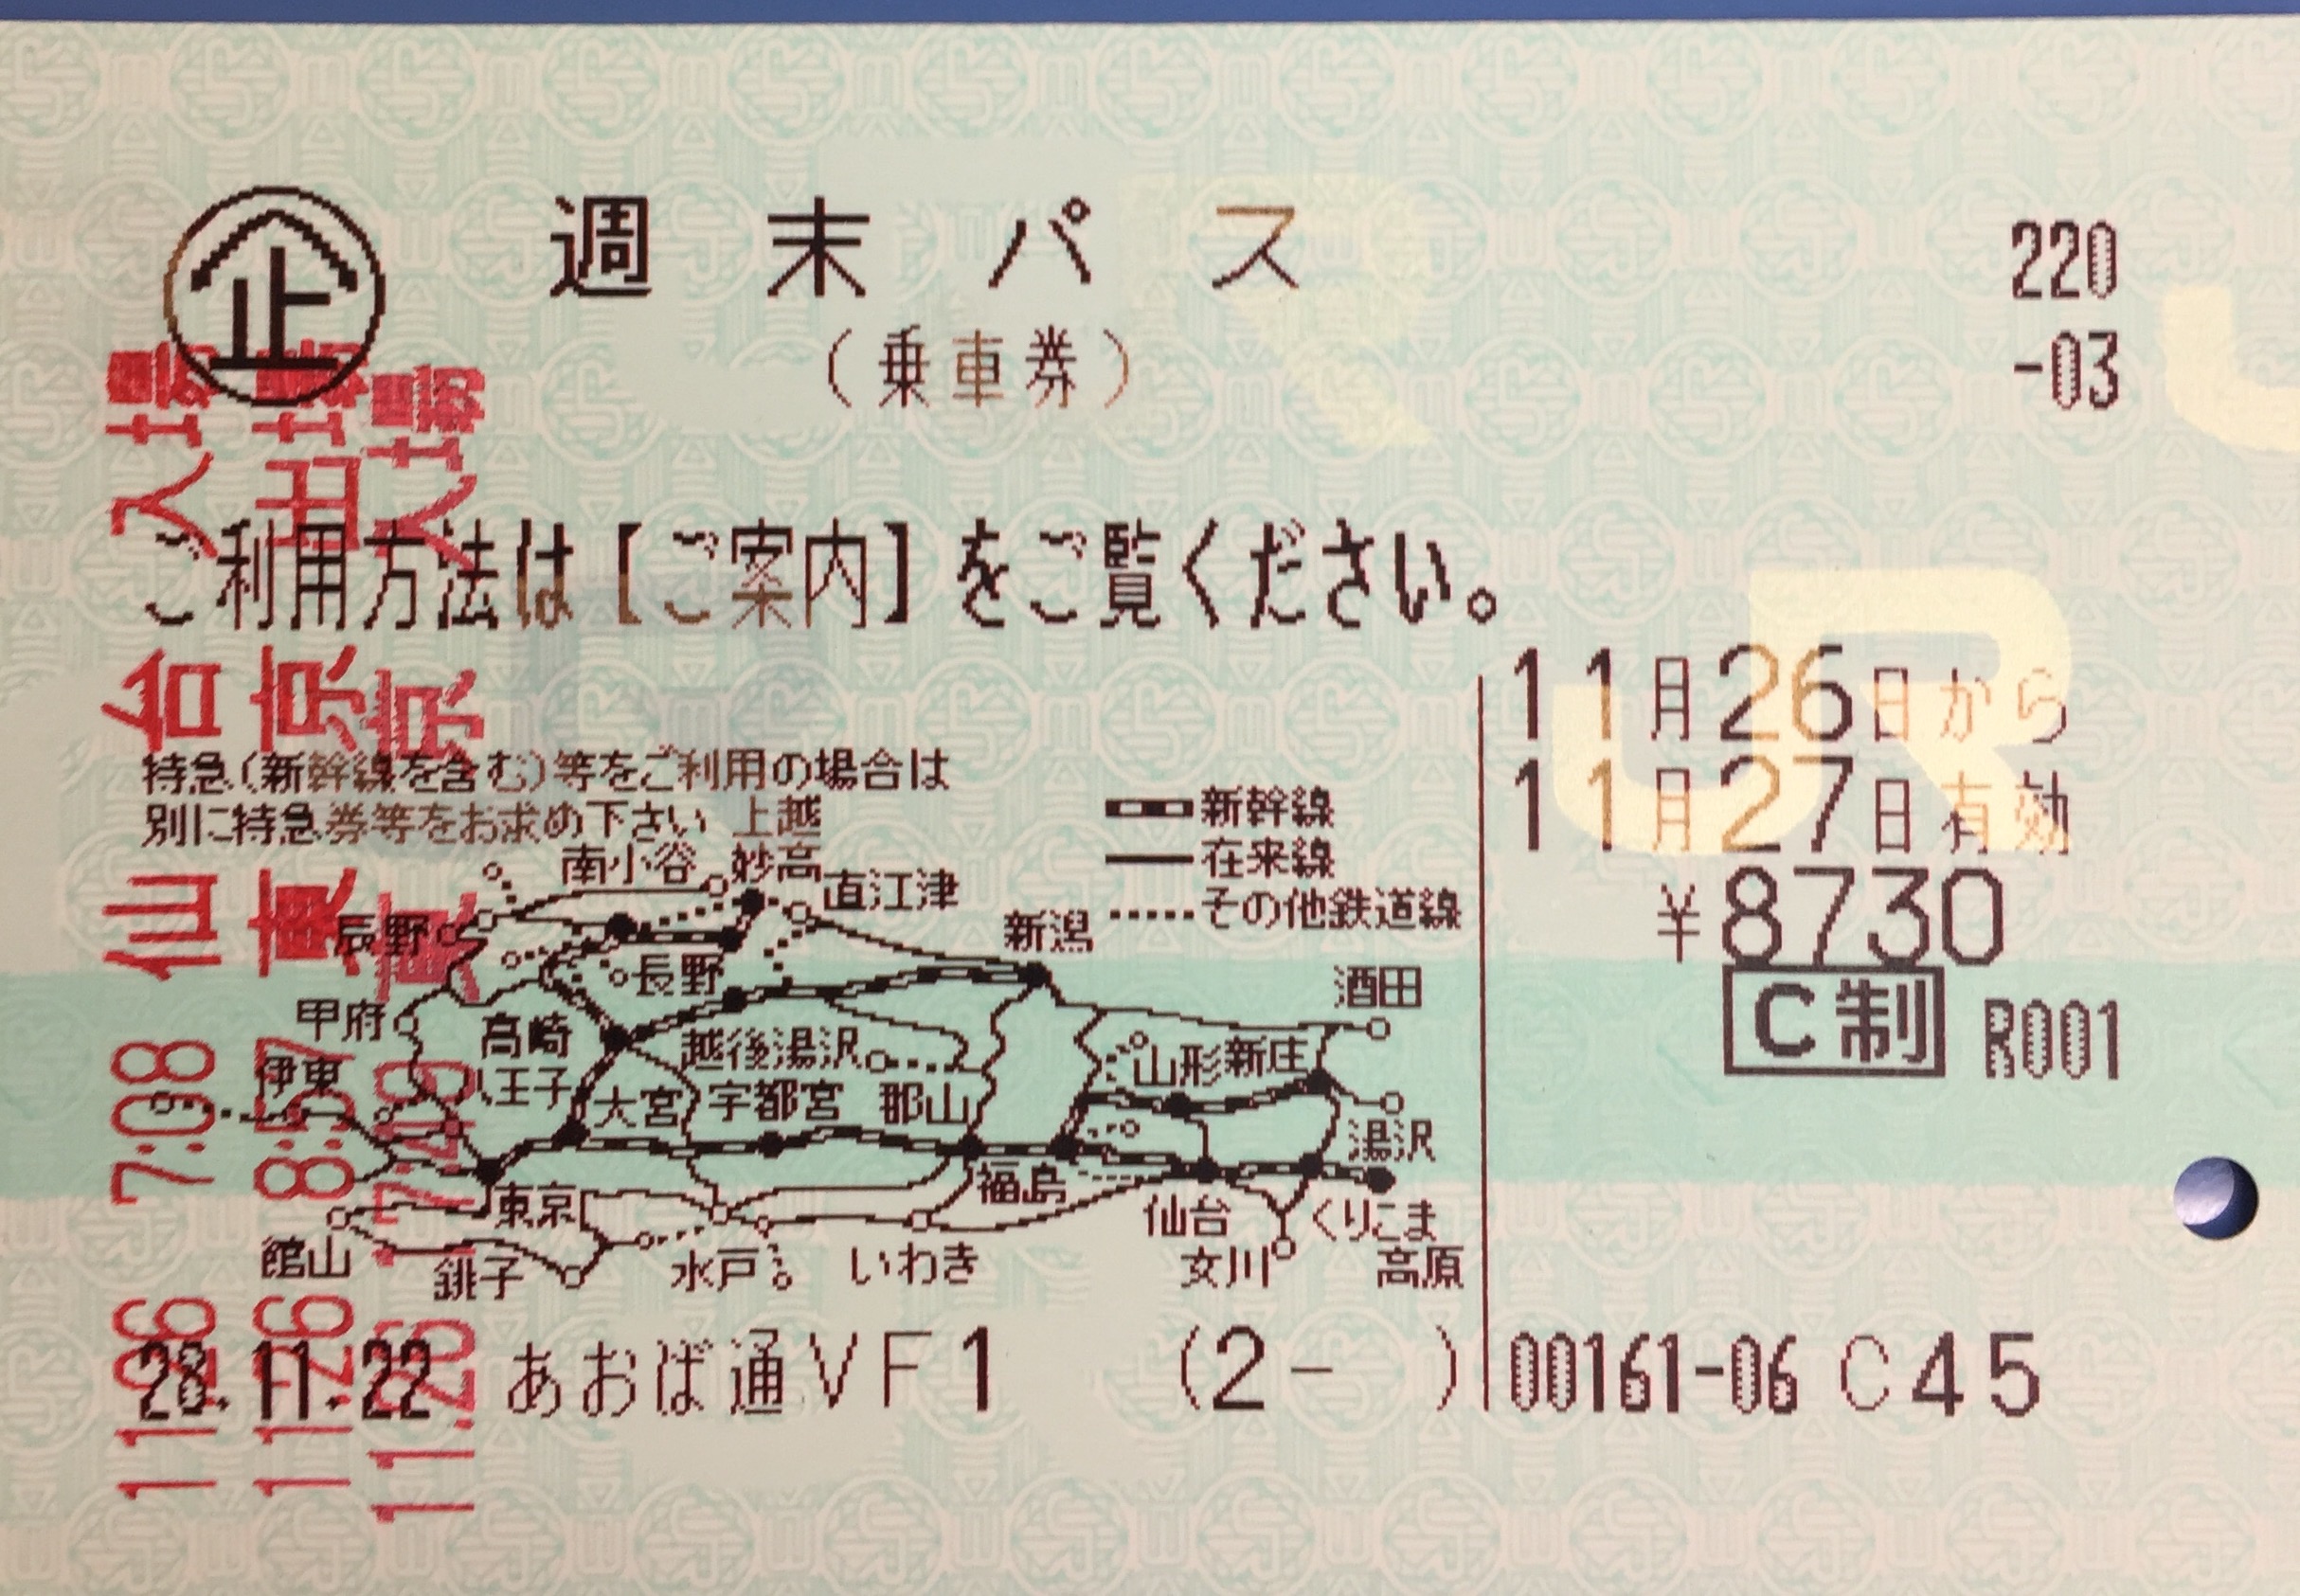 使用済みのjr東日本の週末パスを売却 仙台 東京を169円で新幹線往復 おゆきの学び